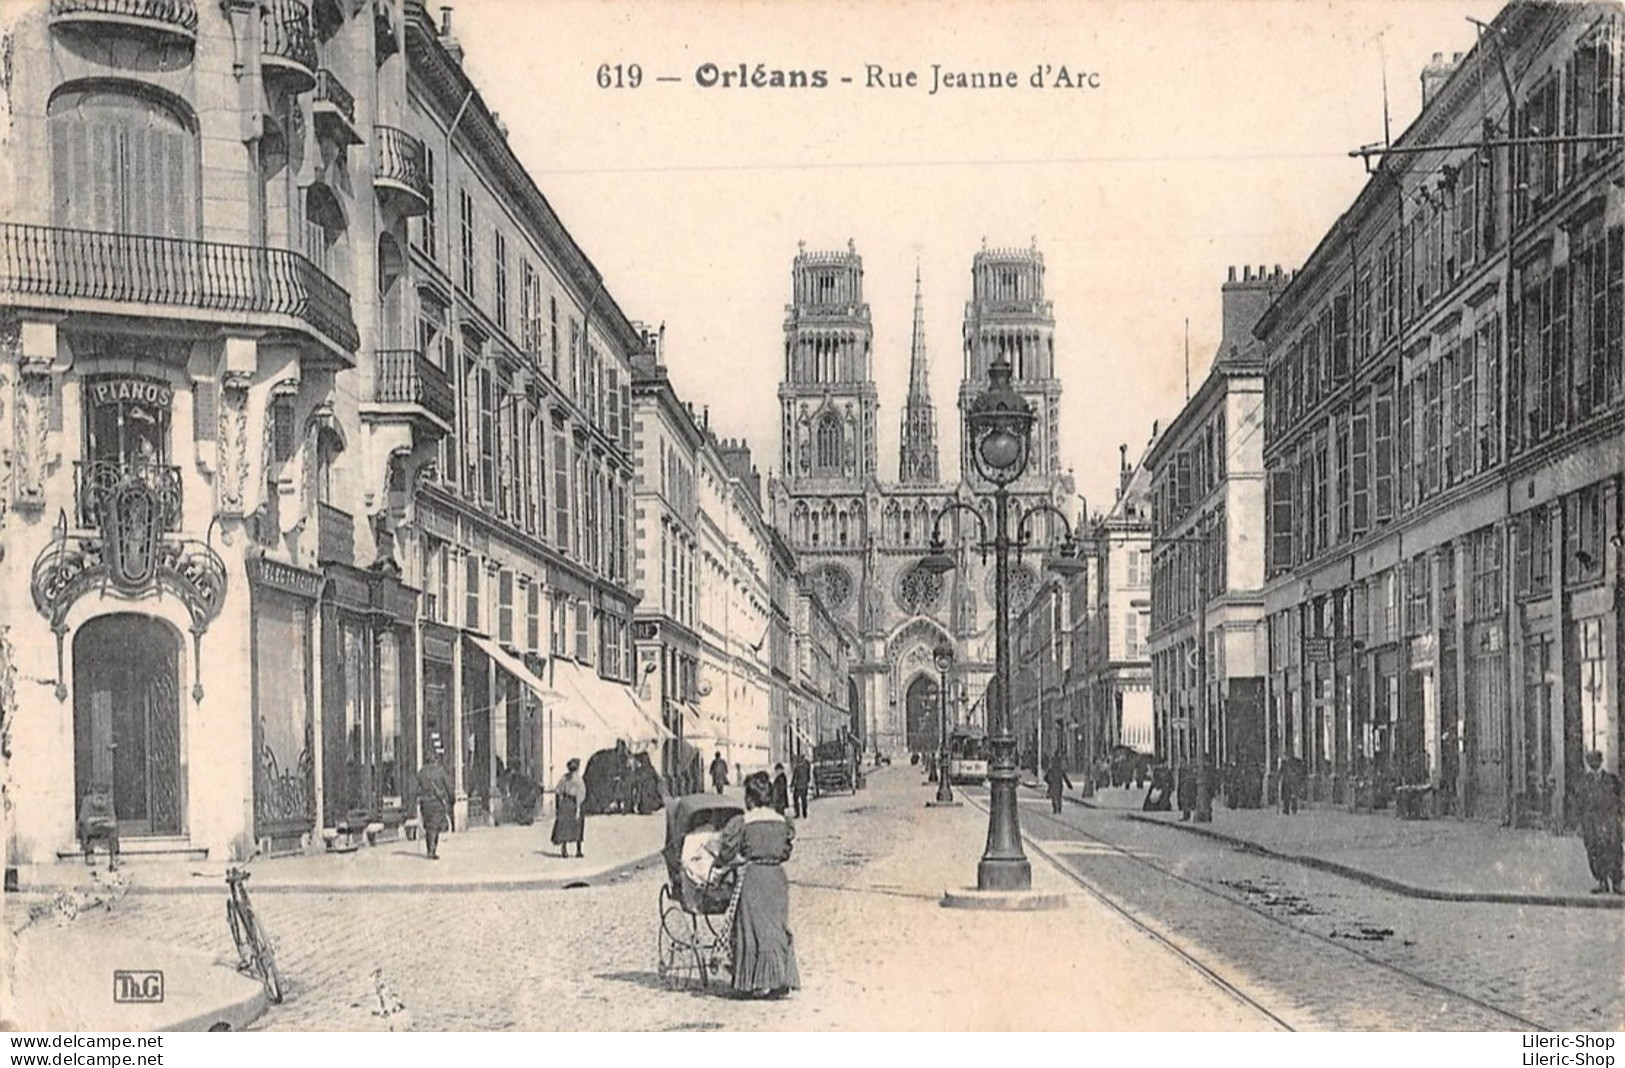 ►ORLÉANS◄29►CPA◄1917►RUE JEANNE D'ARC◄►CATHÉDRALE SAINTE-CROIX►ÉDIT. TH. G. N°619 - Orleans